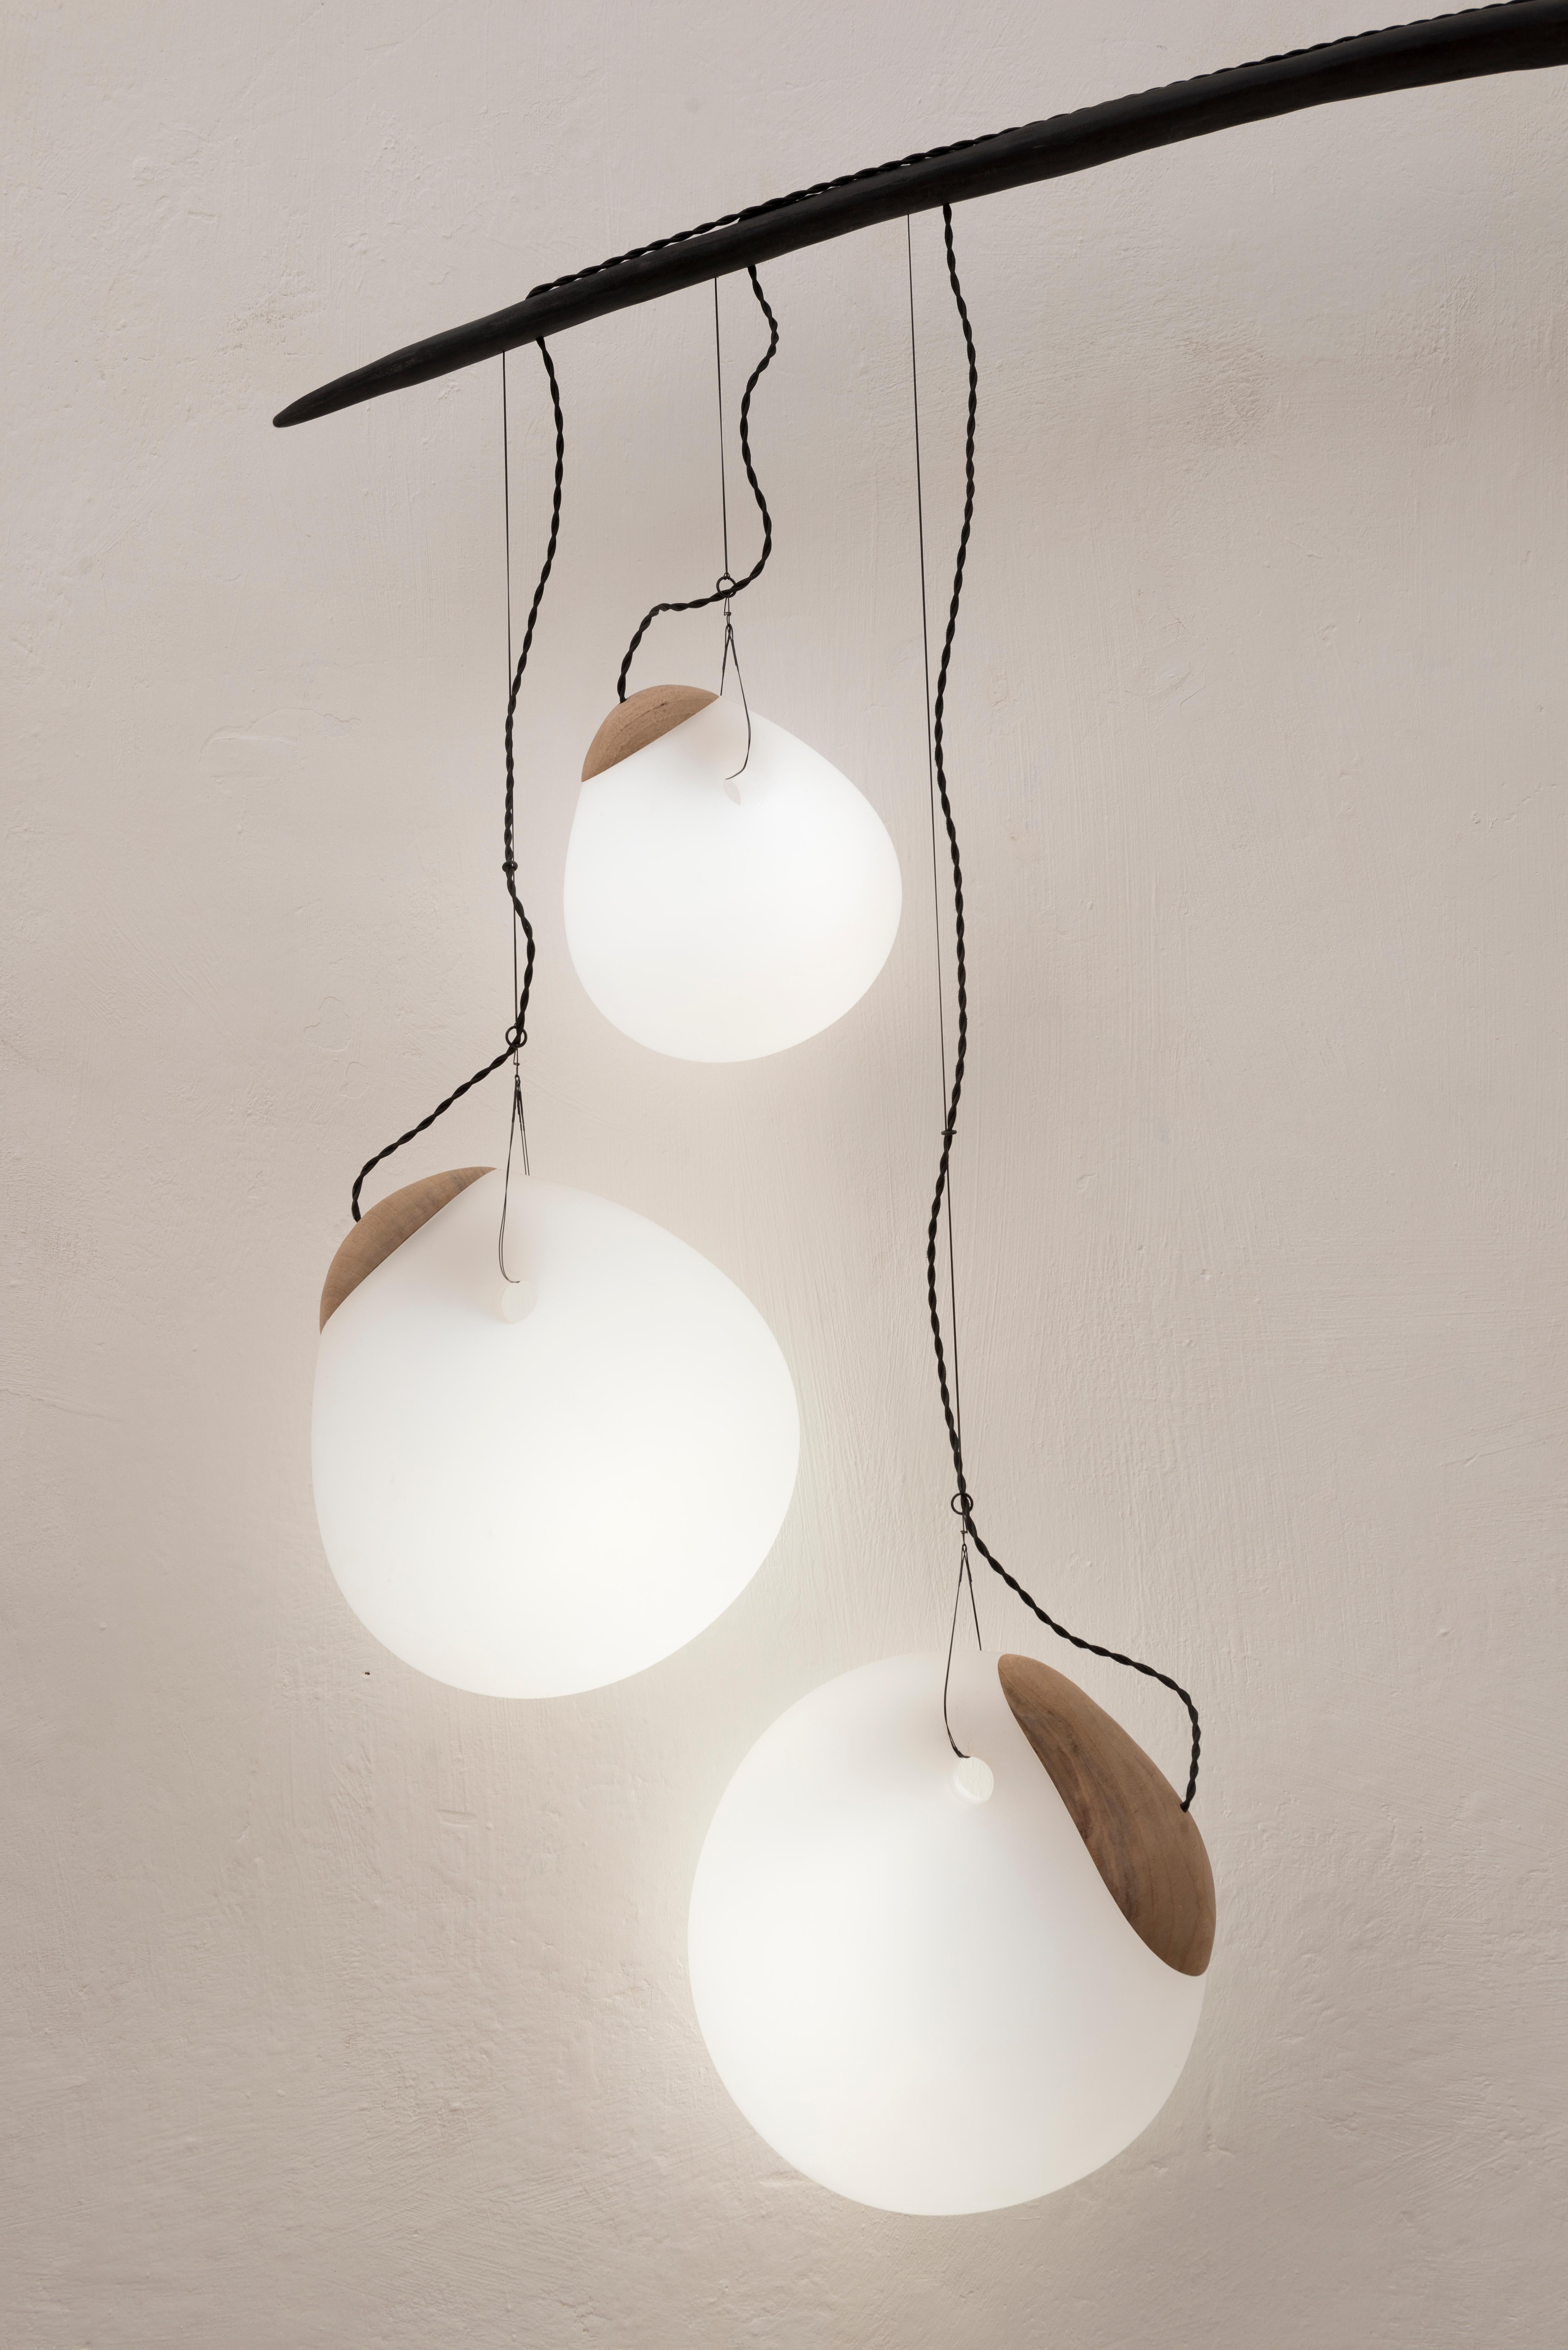 Organic Modern Fluxus, Sculpted Lighting by Jérôme Pereira